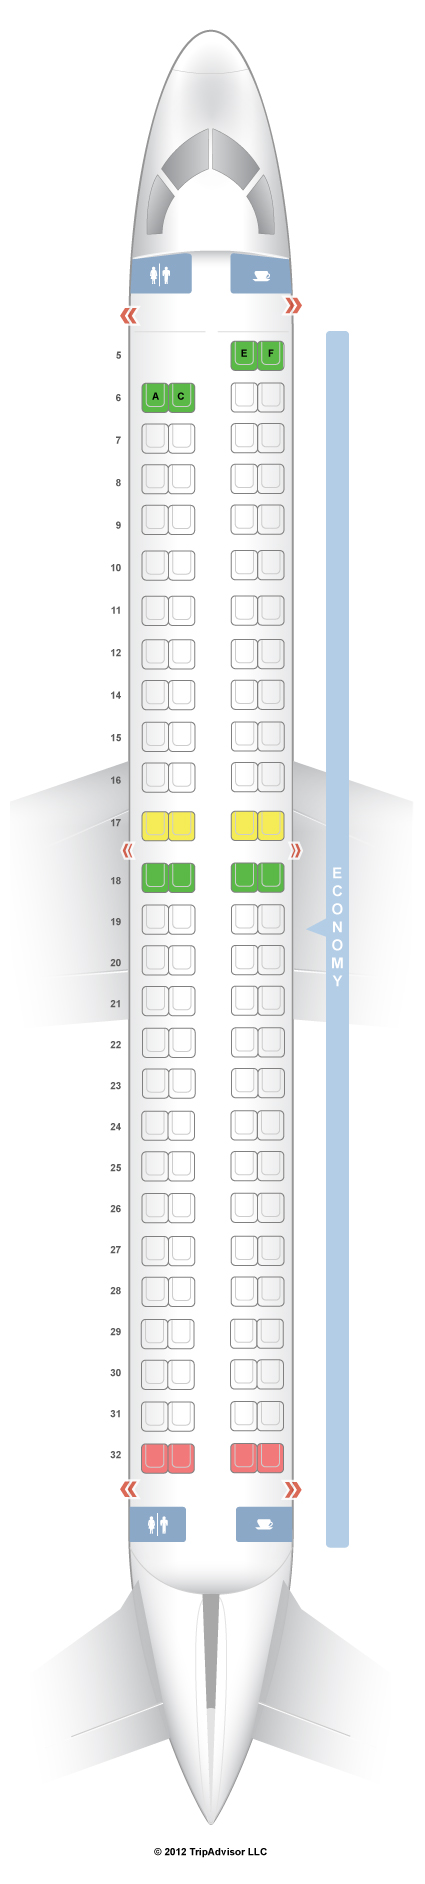 Copa Airlines Seat Map Seatguru Seat Map Copa Airlines - Seatguru